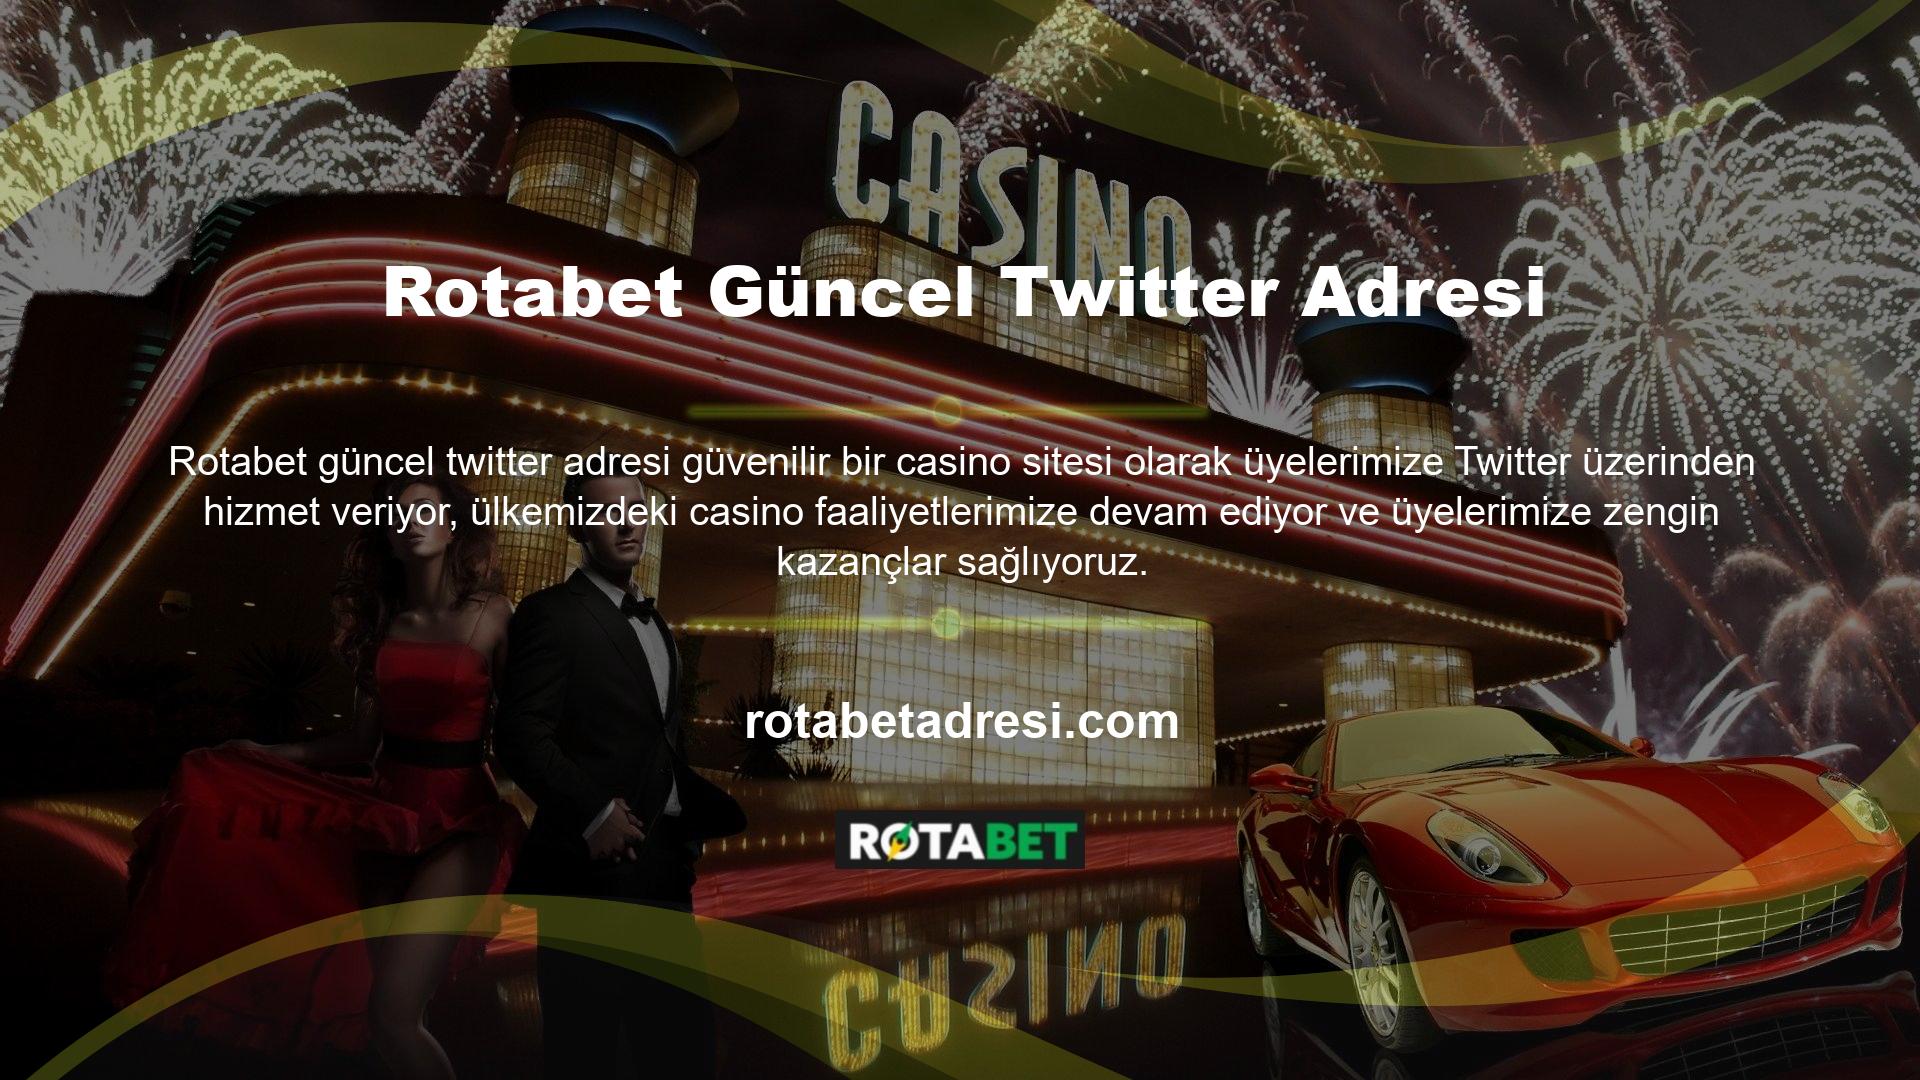 Rotabet güncel Twitter adresine göre Twitter servisinde en çok konuşulan konulardan biri de sitenin sosyal medya üzerinden üyelerine sunduğu sürpriz bonus kampanyaları